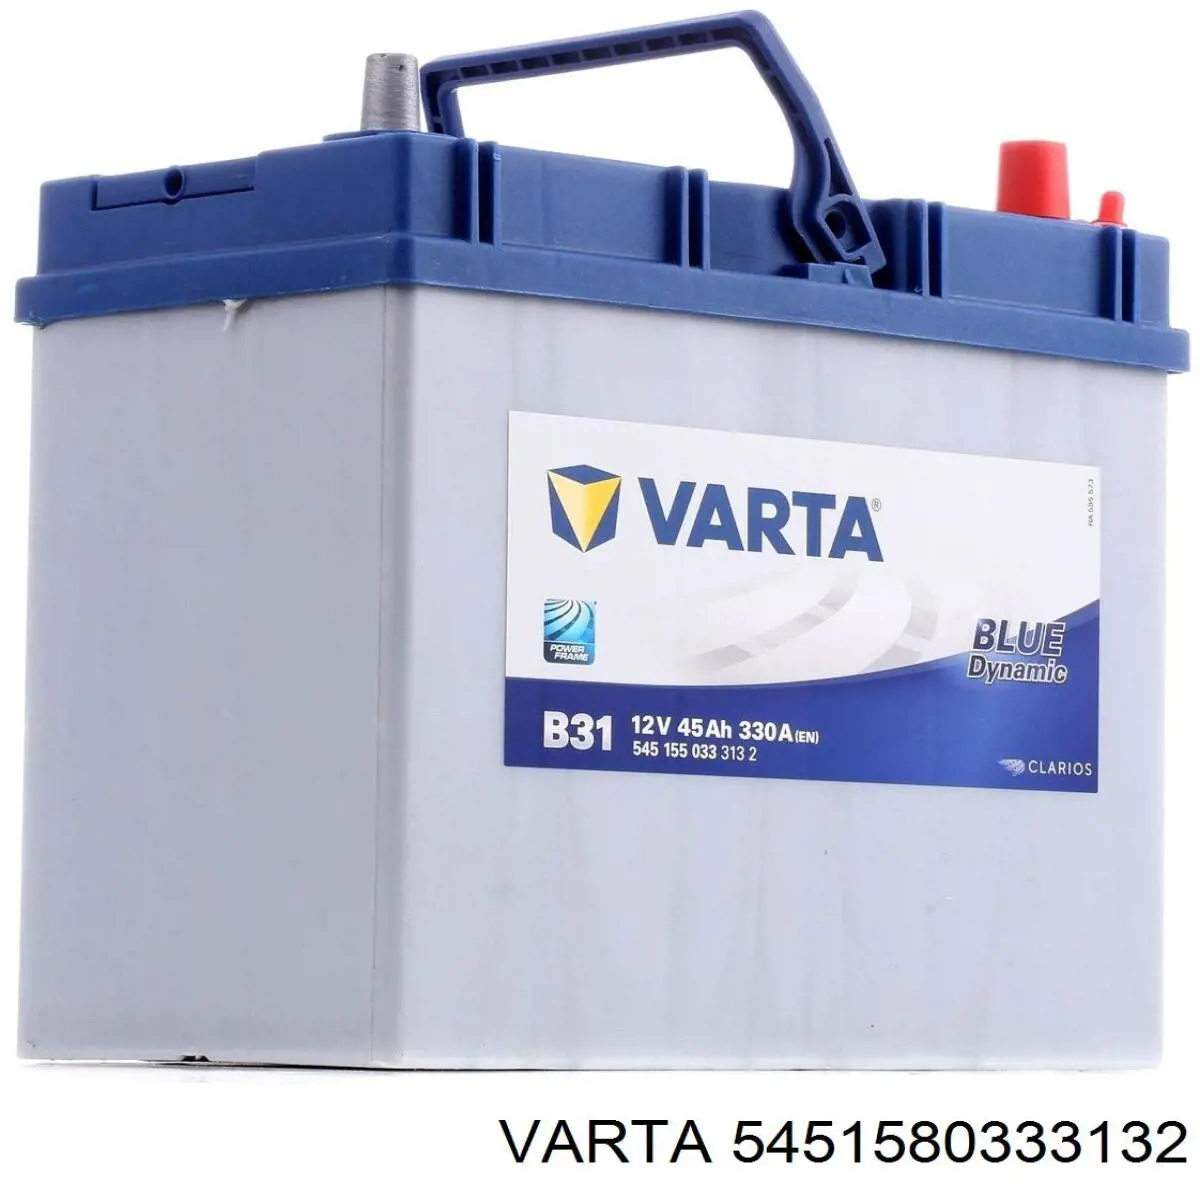 Batería de Arranque Varta Blue Dynamic 45 ah 12 v B00 (5451580333132)